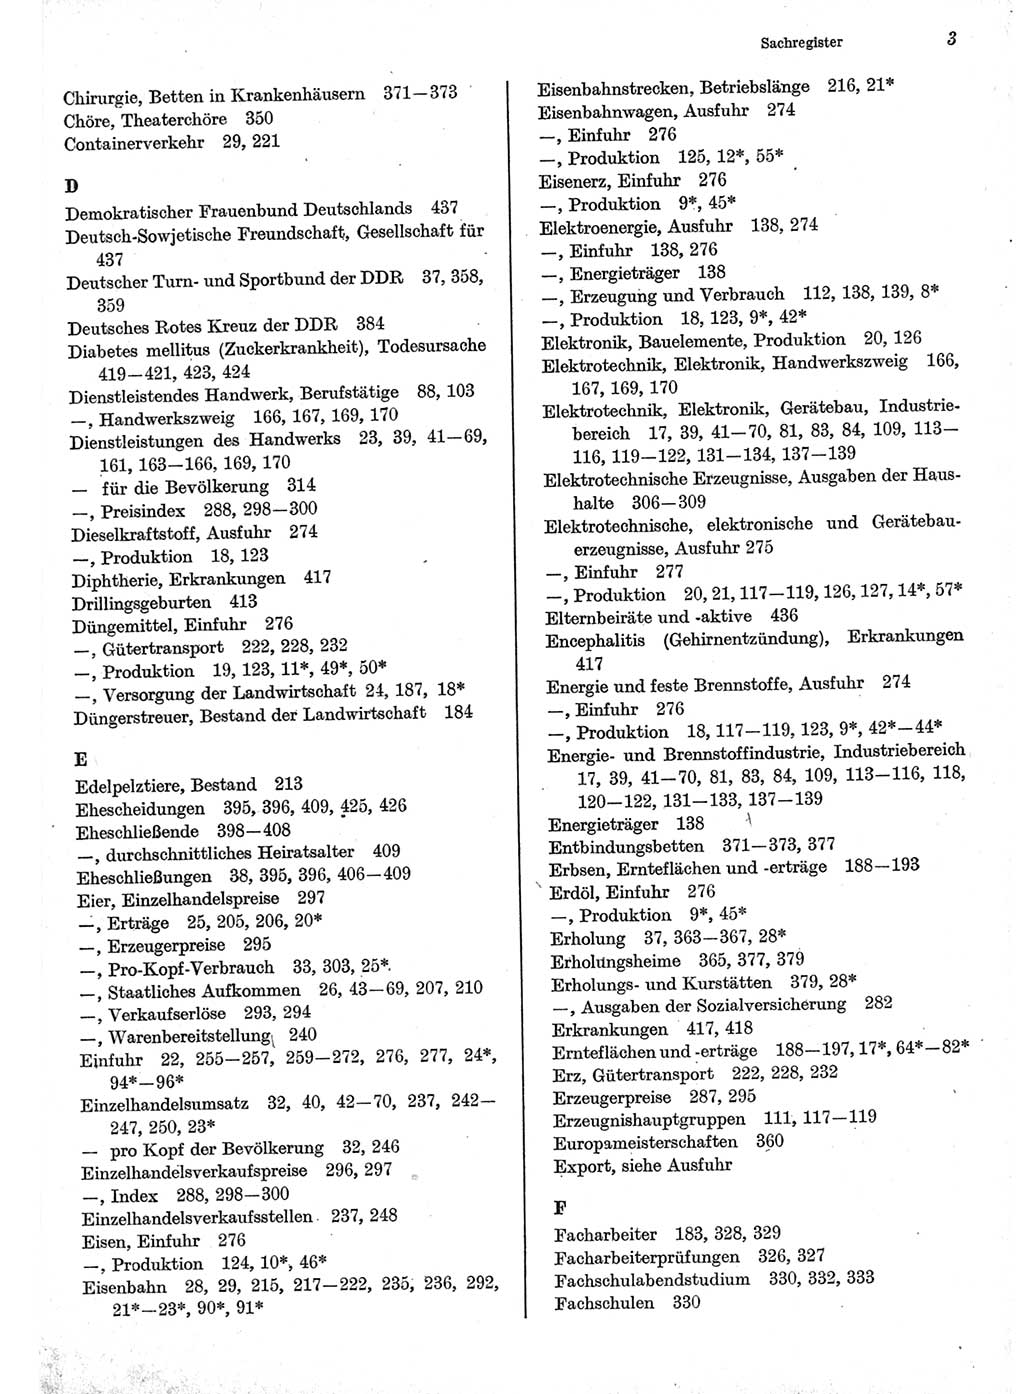 Statistisches Jahrbuch der Deutschen Demokratischen Republik (DDR) 1977, Seite 3 (Stat. Jb. DDR 1977, S. 3)